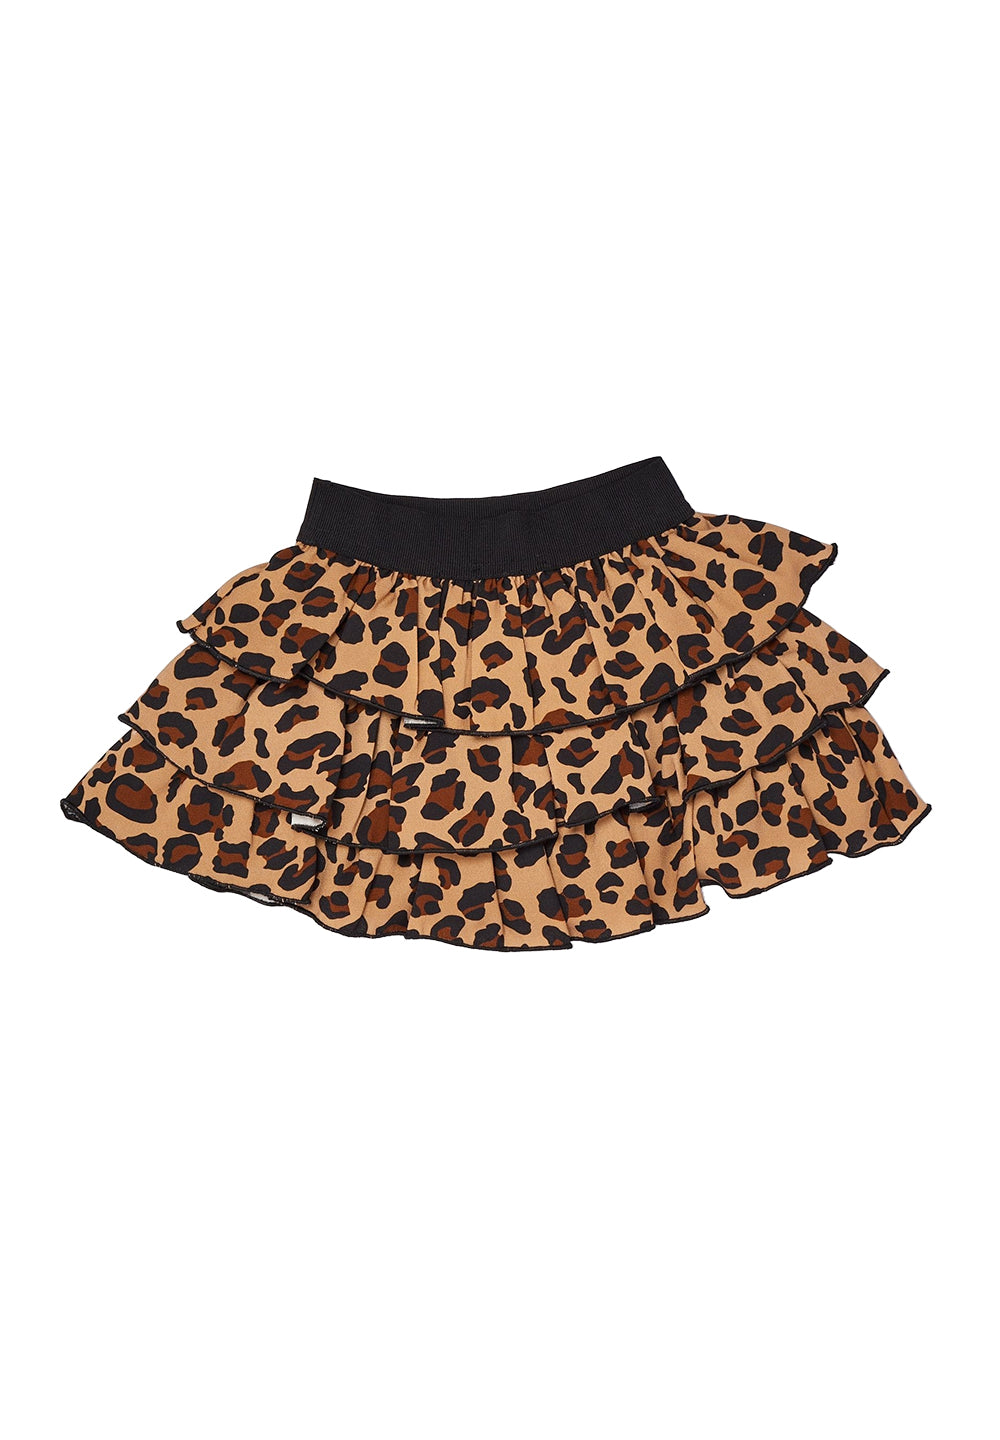 Leopardenrock für Mädchen